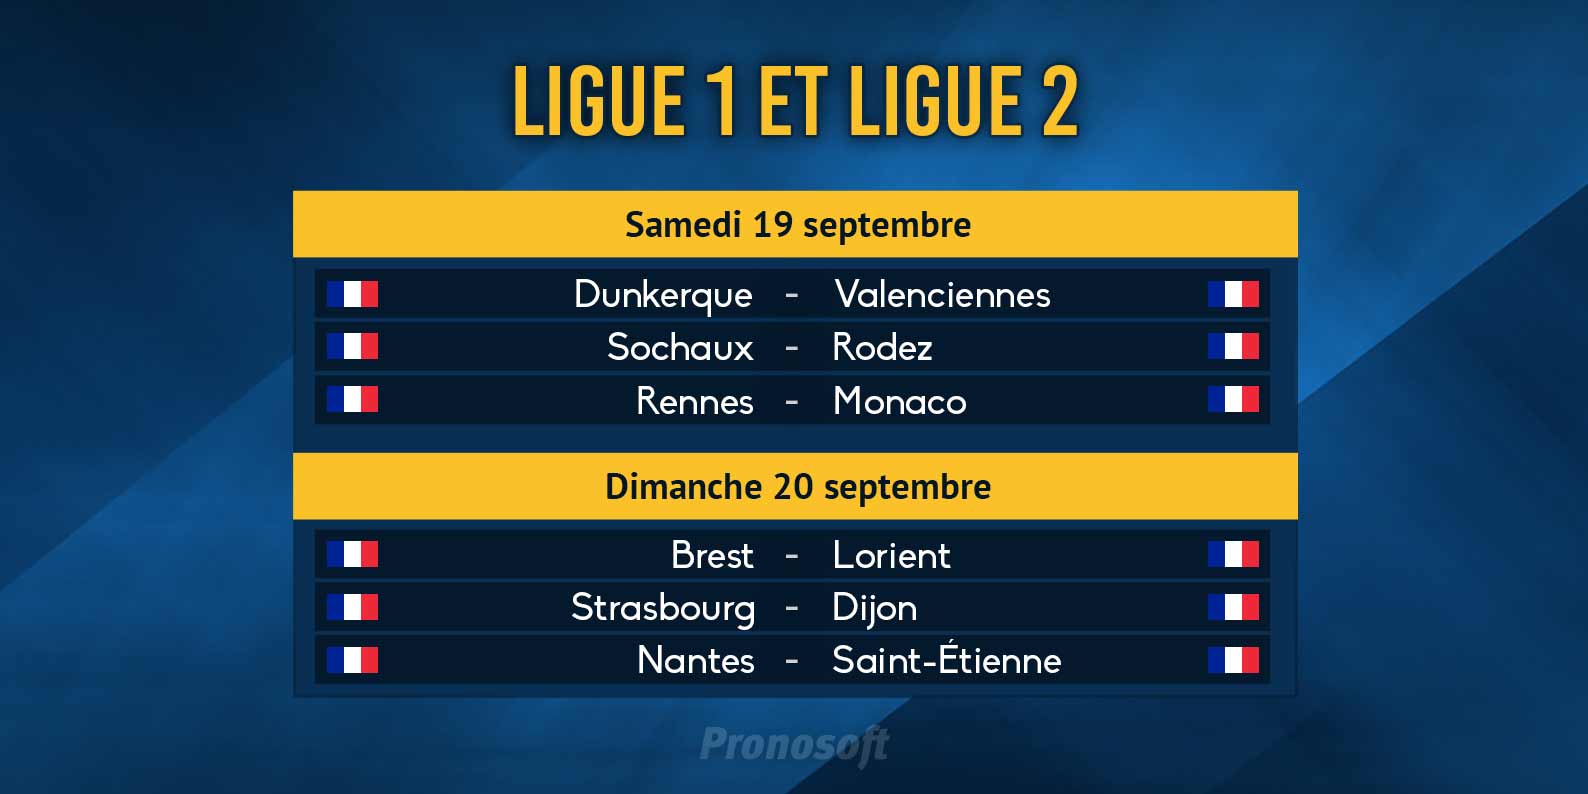 Analyses et pronostics de six matches de Ligue 1 et Ligue 2.